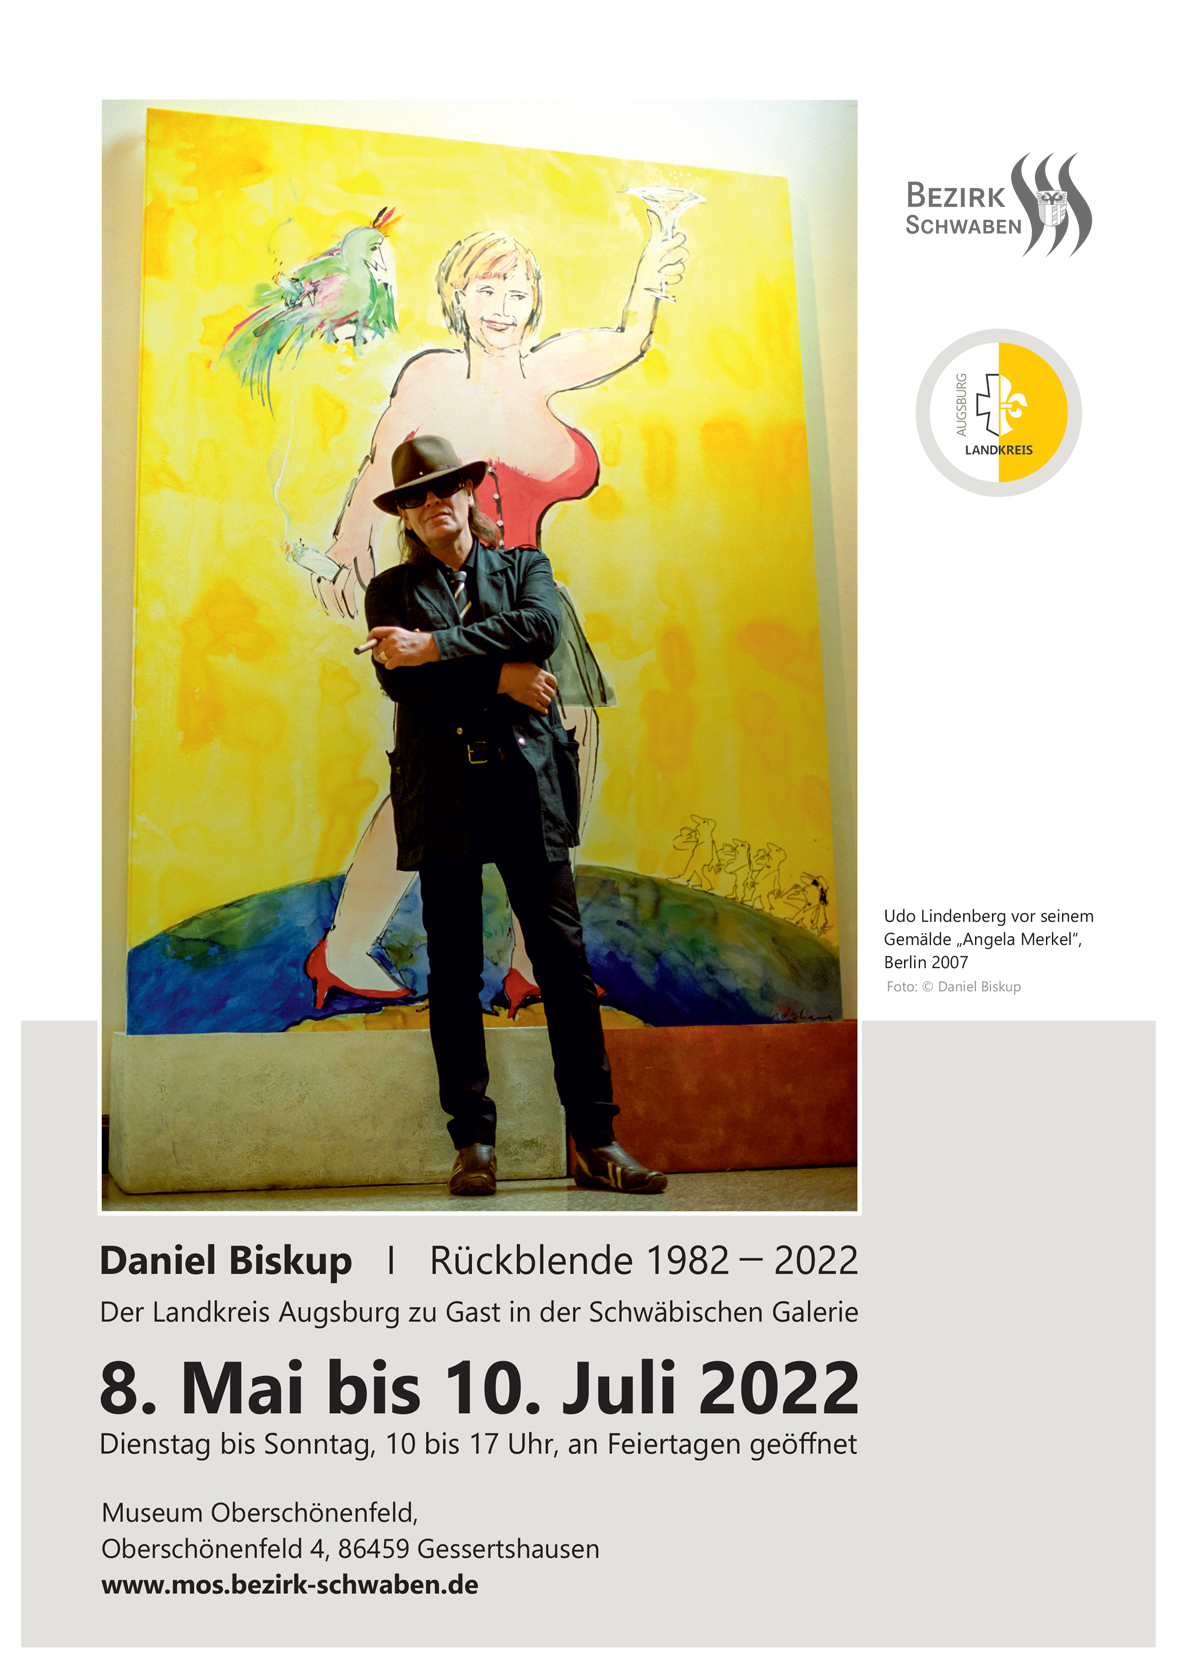 Plakat mit Daten zur Ausstellung und großem Bild mit dem Sänger Udo Lindenberg